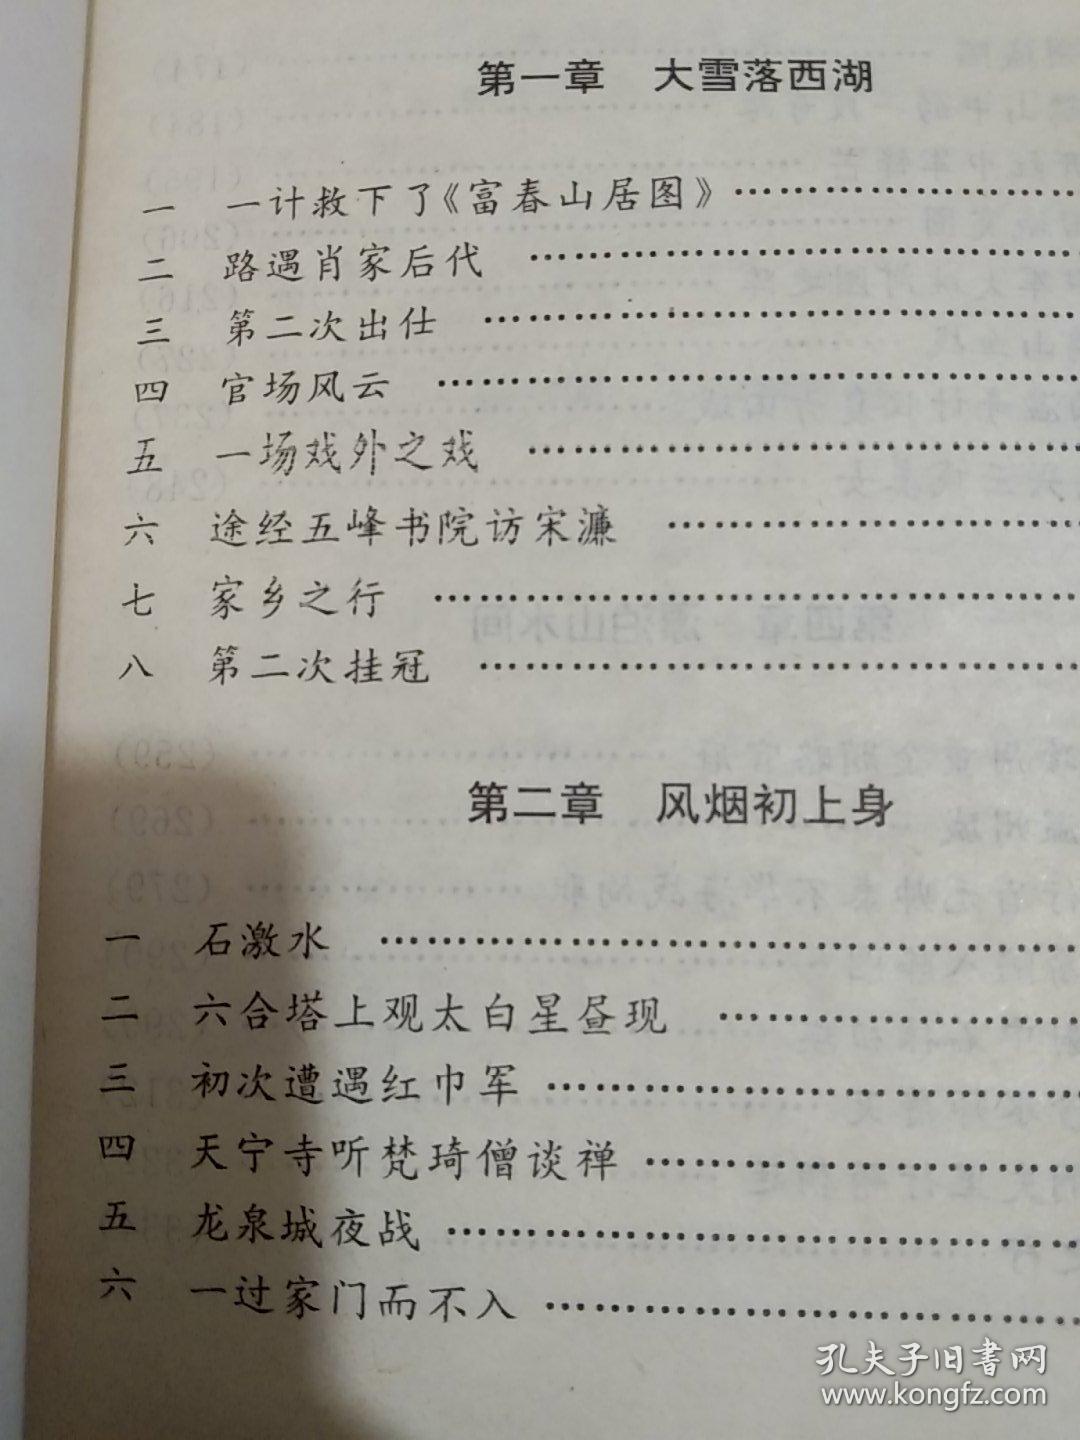 刘伯温 传奇的一生- 天象、天命、天意-(1－3部)全3本-大明史-刘伯温烧饼歌